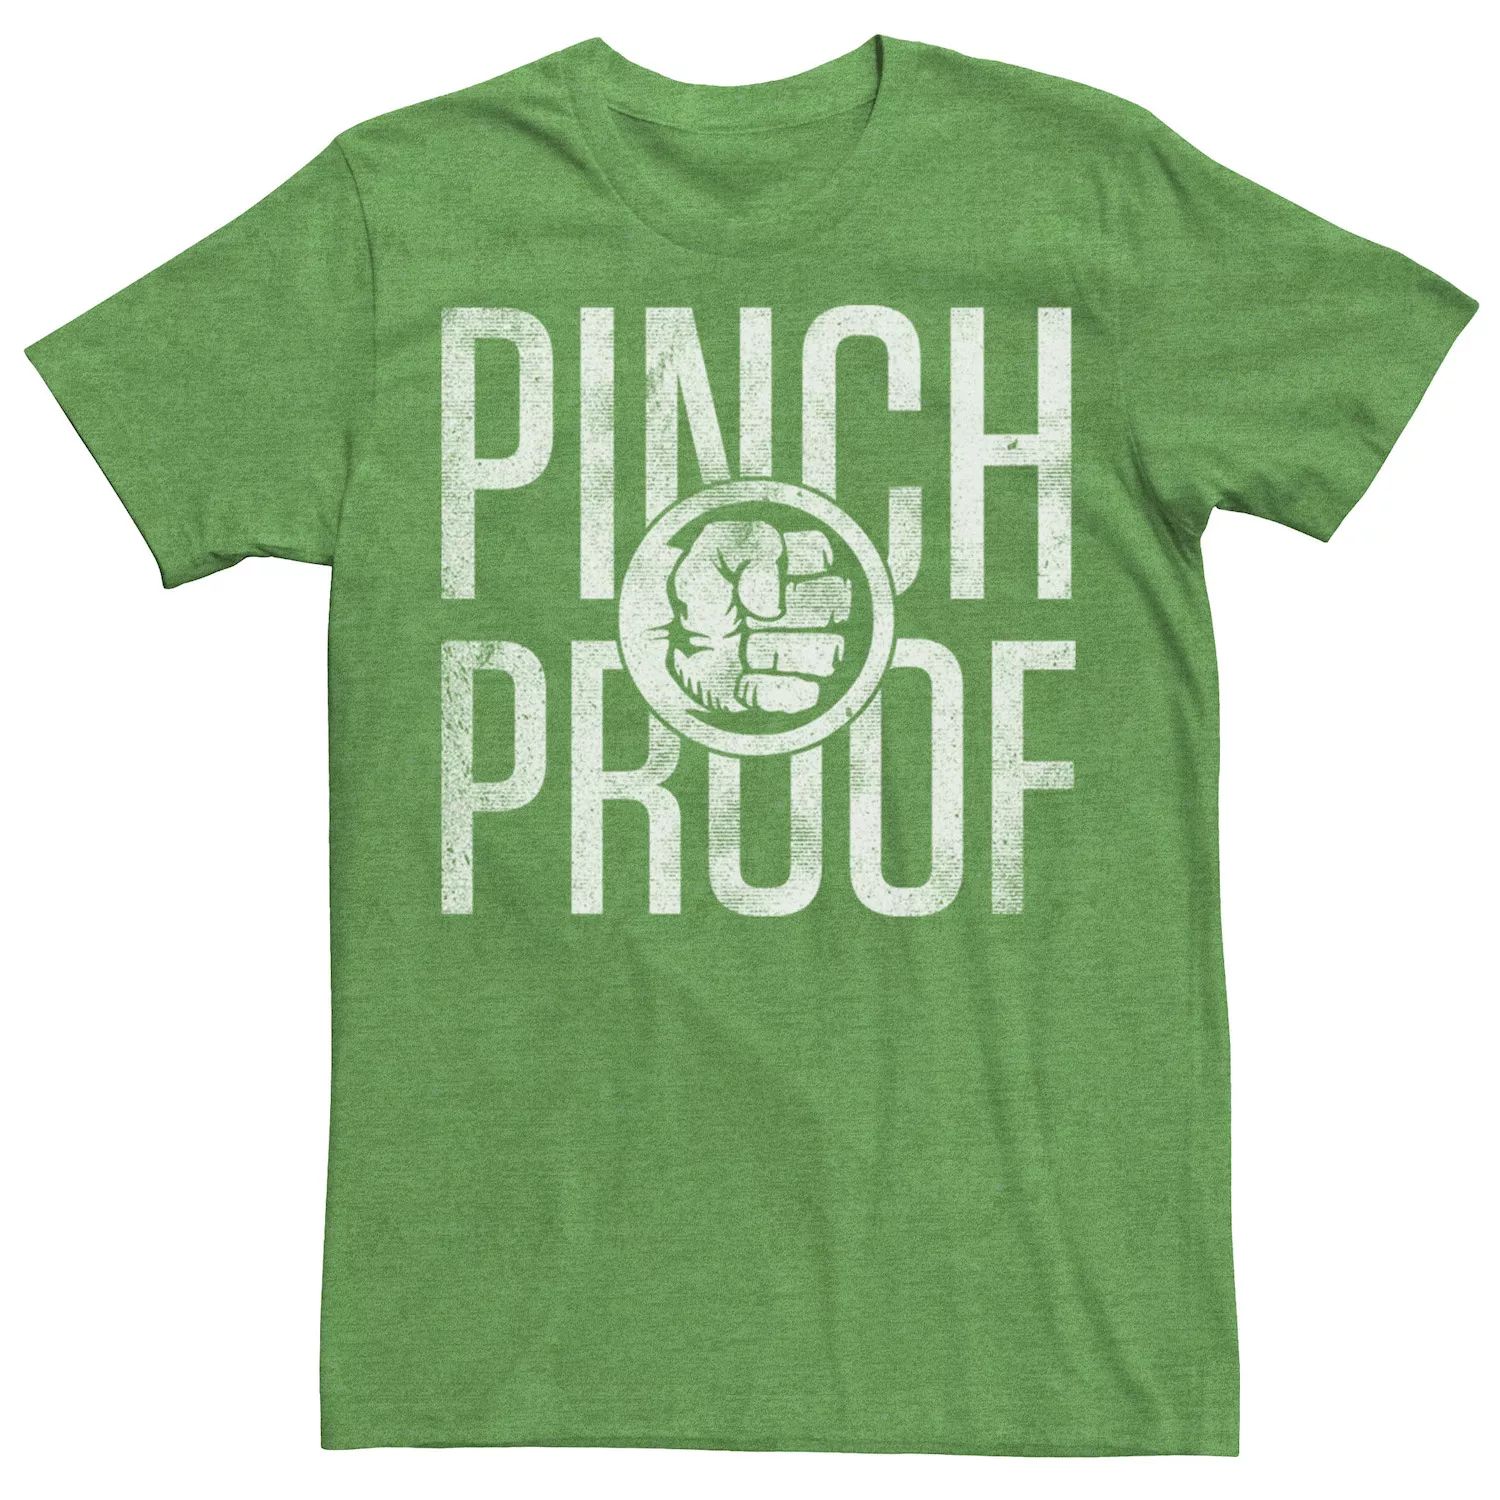 Мужская футболка с рисунком Hulk Pinch Proof ко Дню Святого Патрика Marvel мужская футболка с надписью hulk lucky ко дню святого патрика marvel